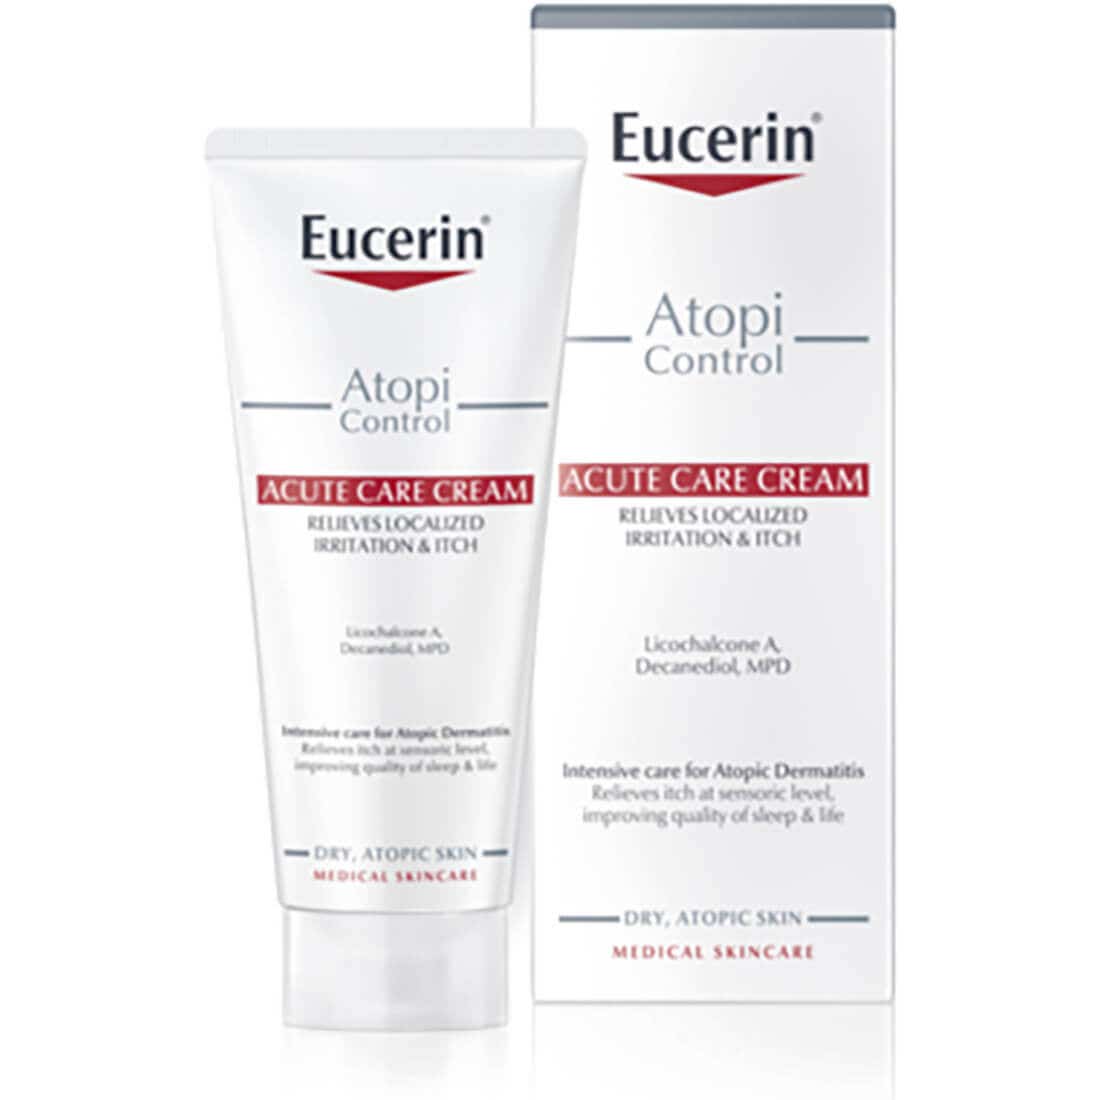 Eucerin Atopi Control Cream for Severe Eczema 40 ml